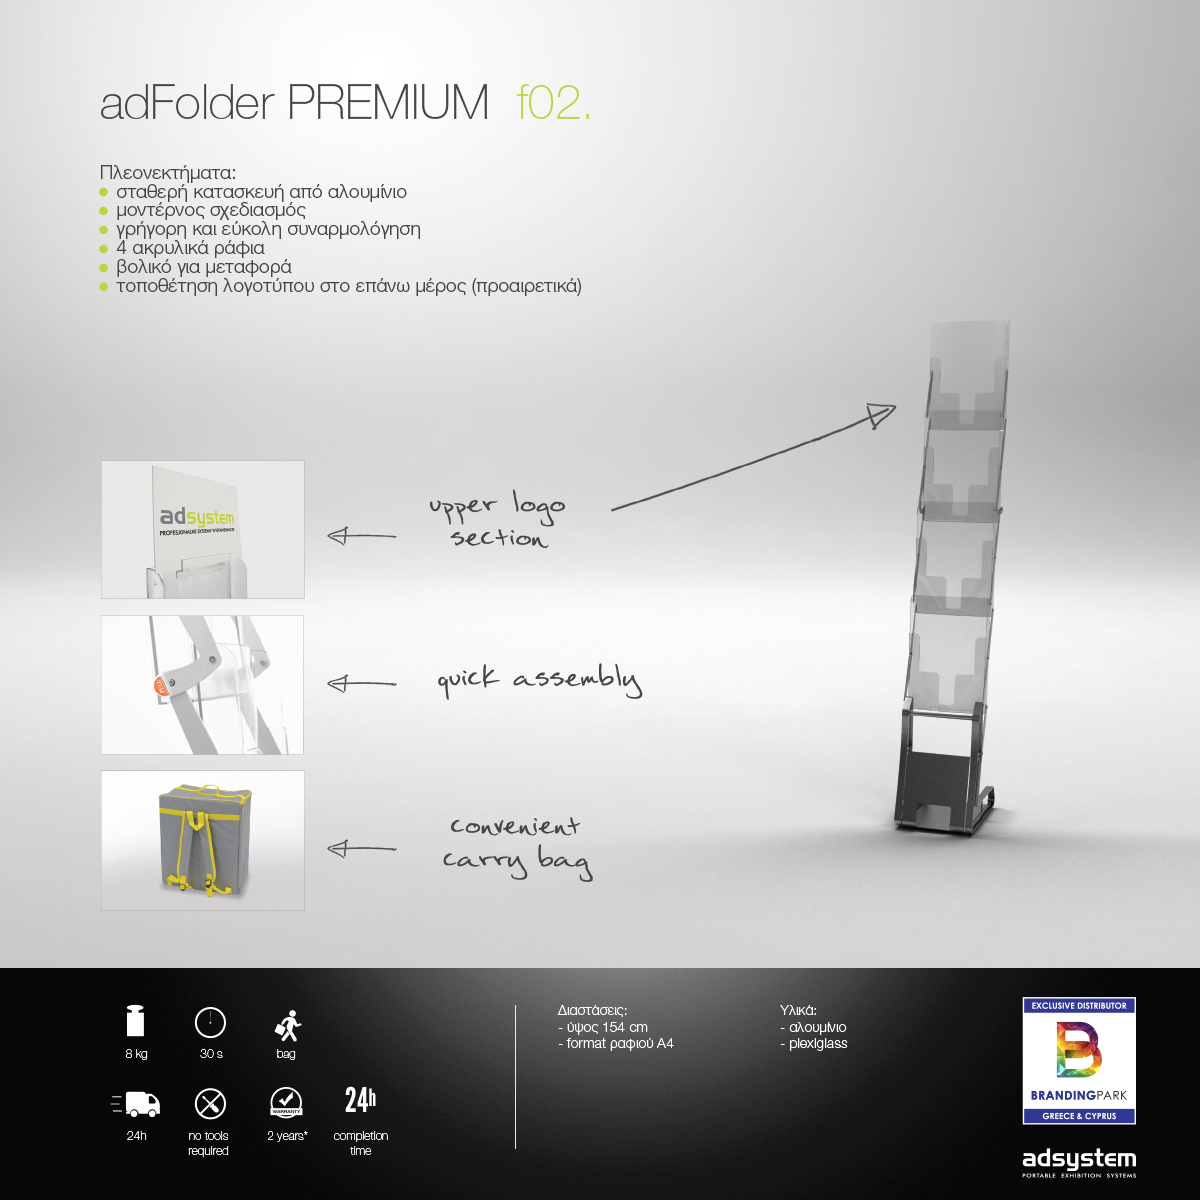 f02 adFolder PREMIUM